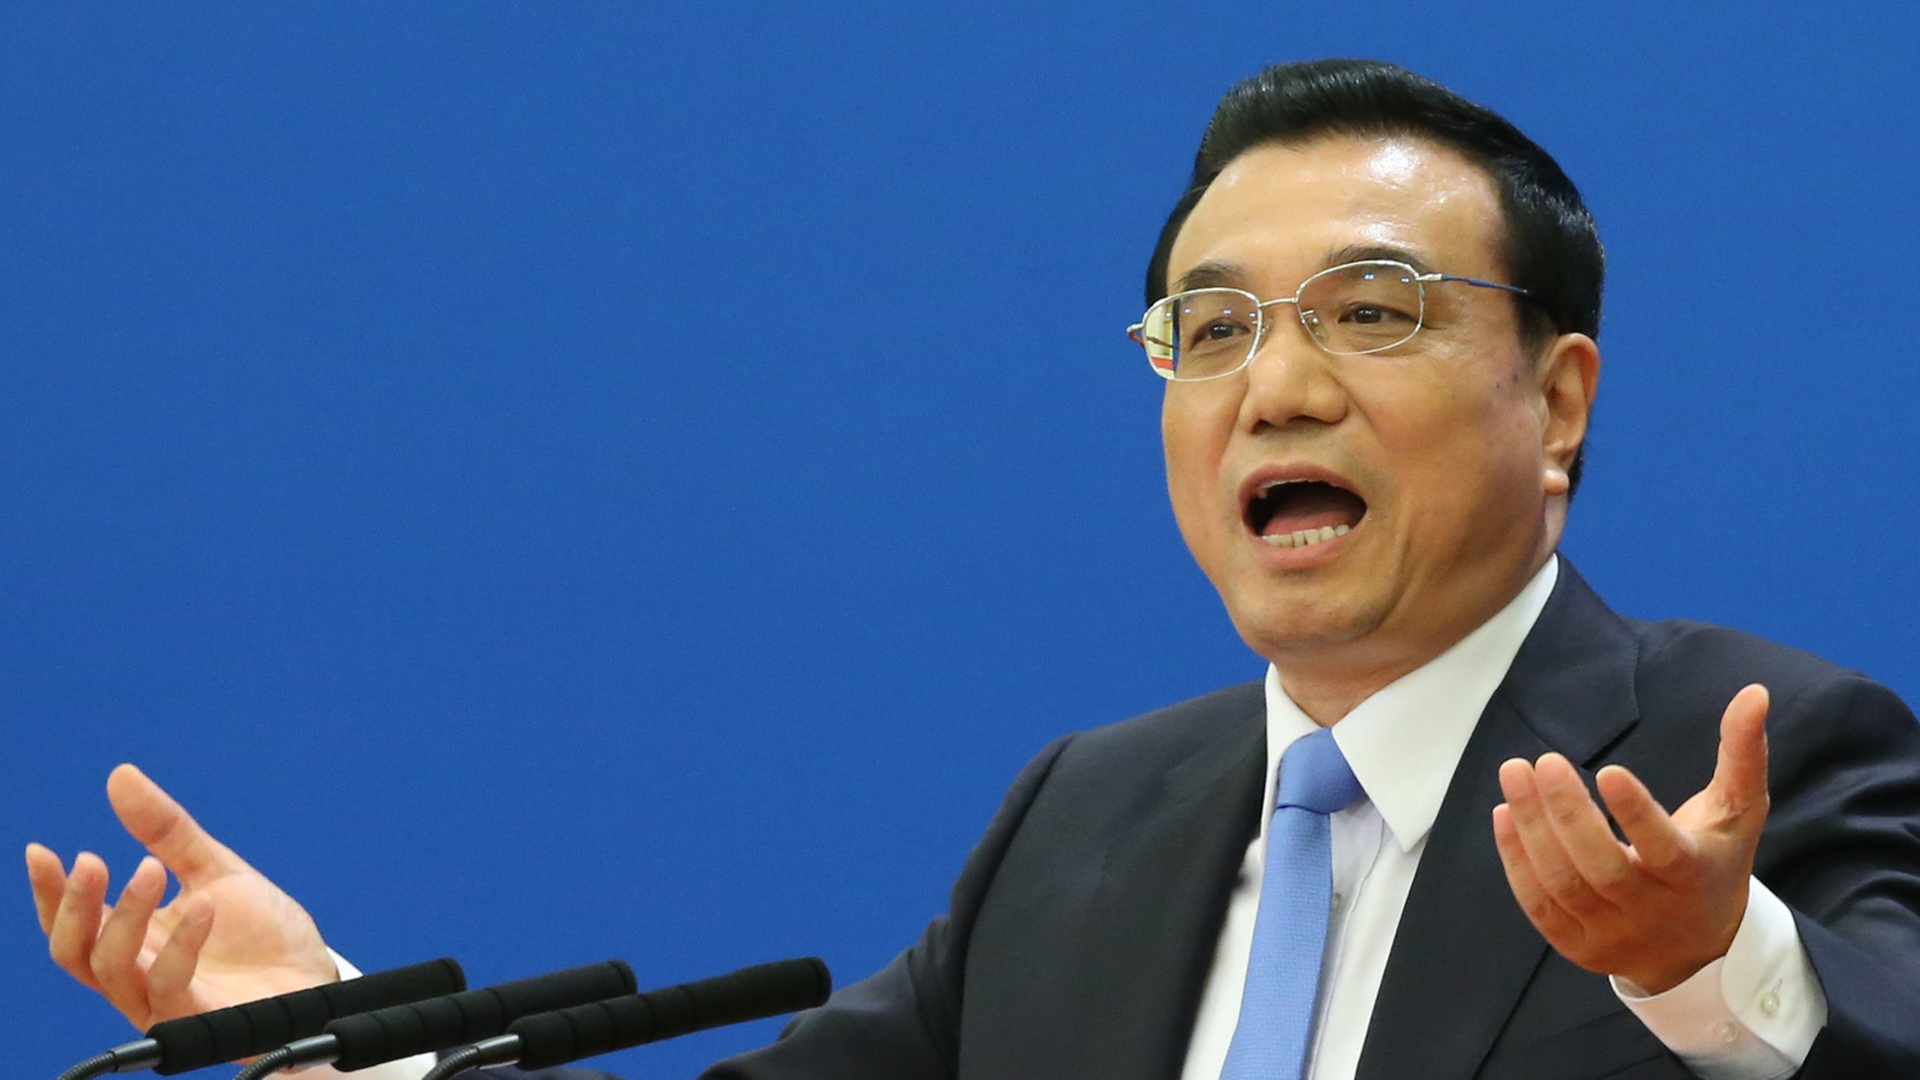 Li spricht gestikulierend vor blauem Hintergrund in mehrere Mikrofone. Er hält im Rahmen einer Pressekonferenz sein Schlusswort zum Volkskongress in Peking.